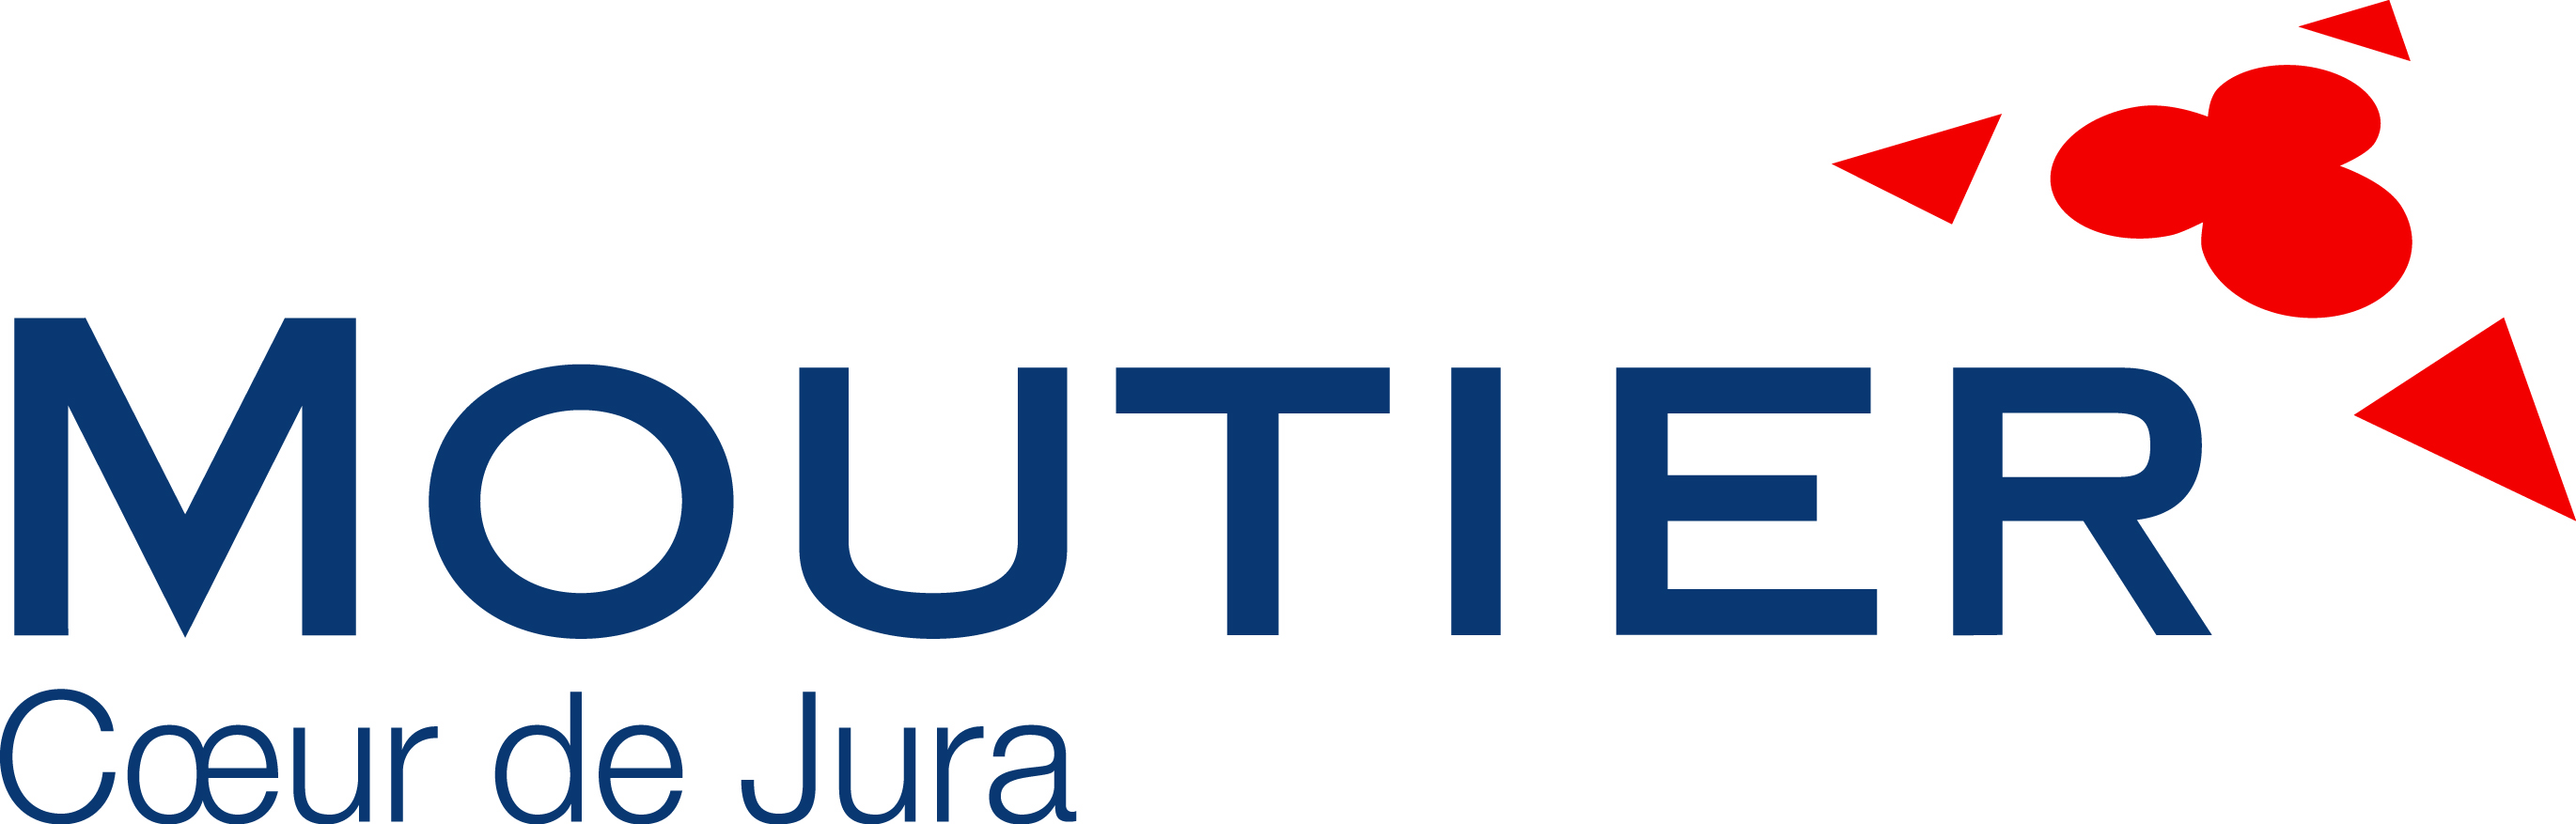 Logo_Moutier